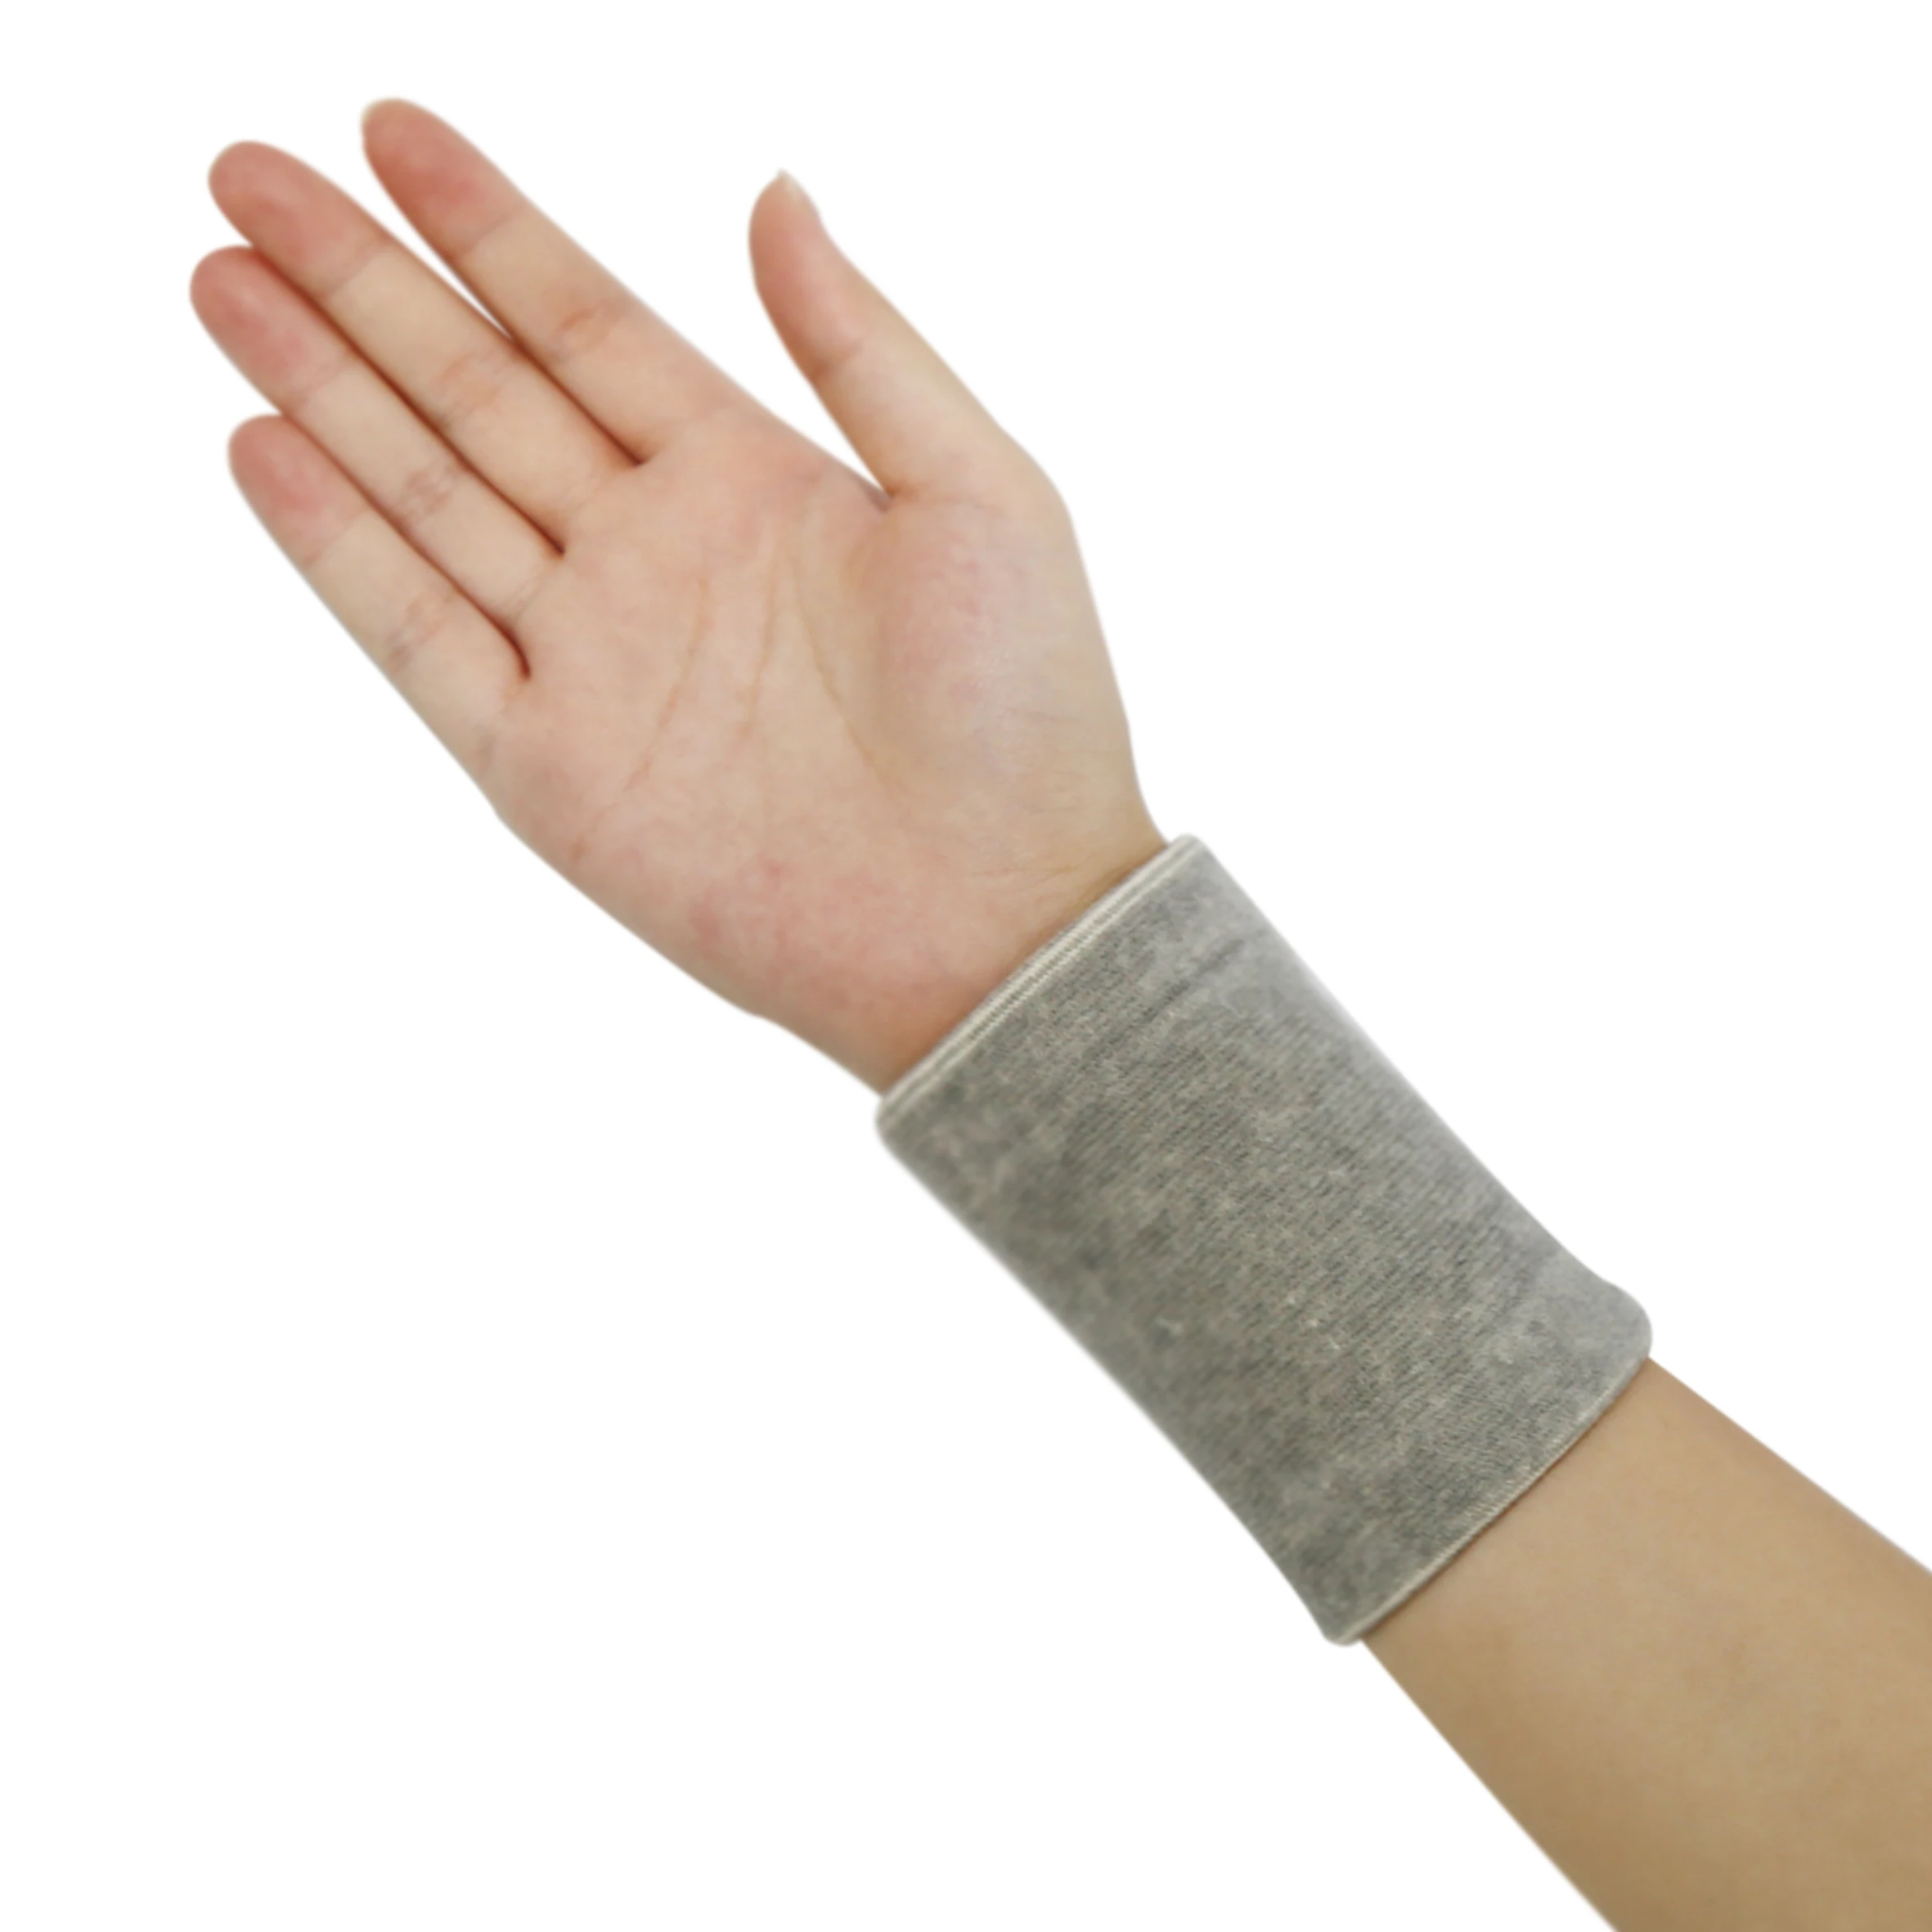 Far Infrared Wrist Support,Wrist Brace,Wrist Guard,Dongguan